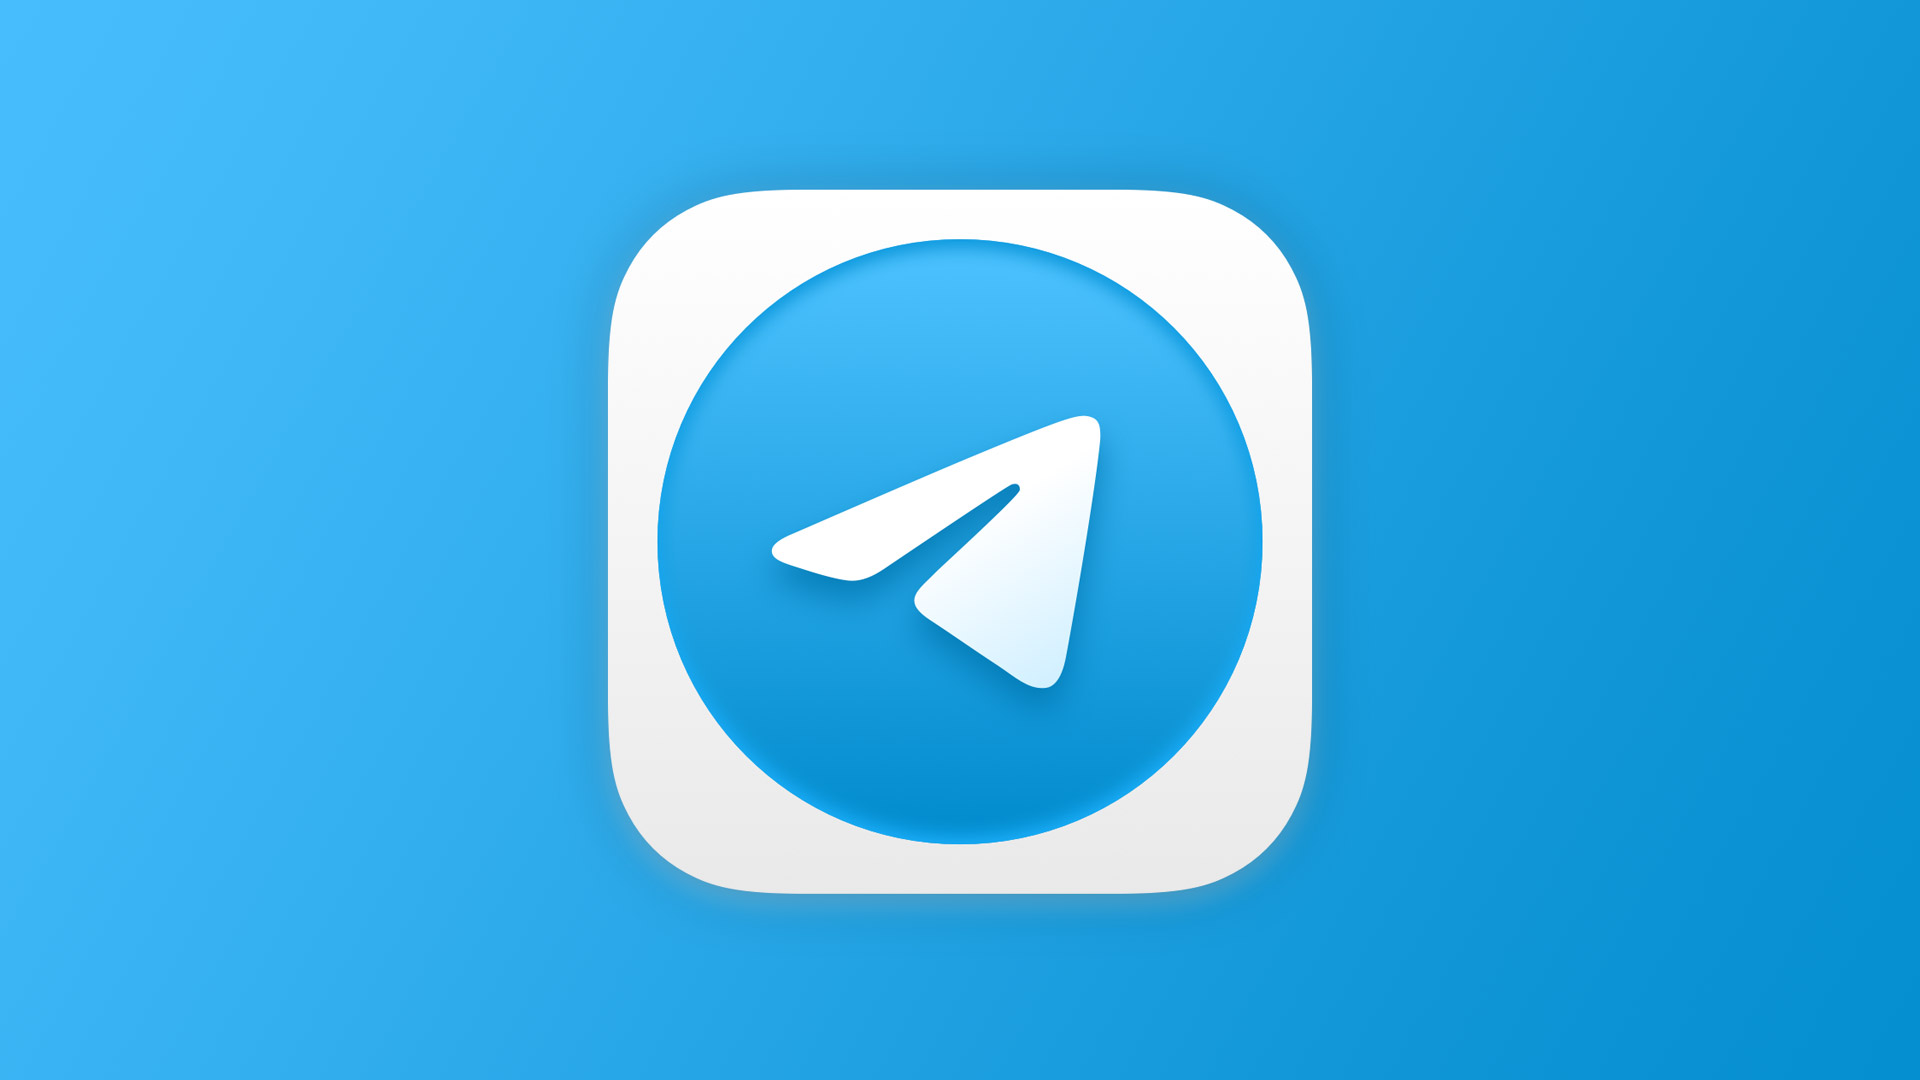 تحديث ضخم لتطبيق تيليجرام | Telegram يقدم 15 ميزة جديدة تعرف عليها من هنا